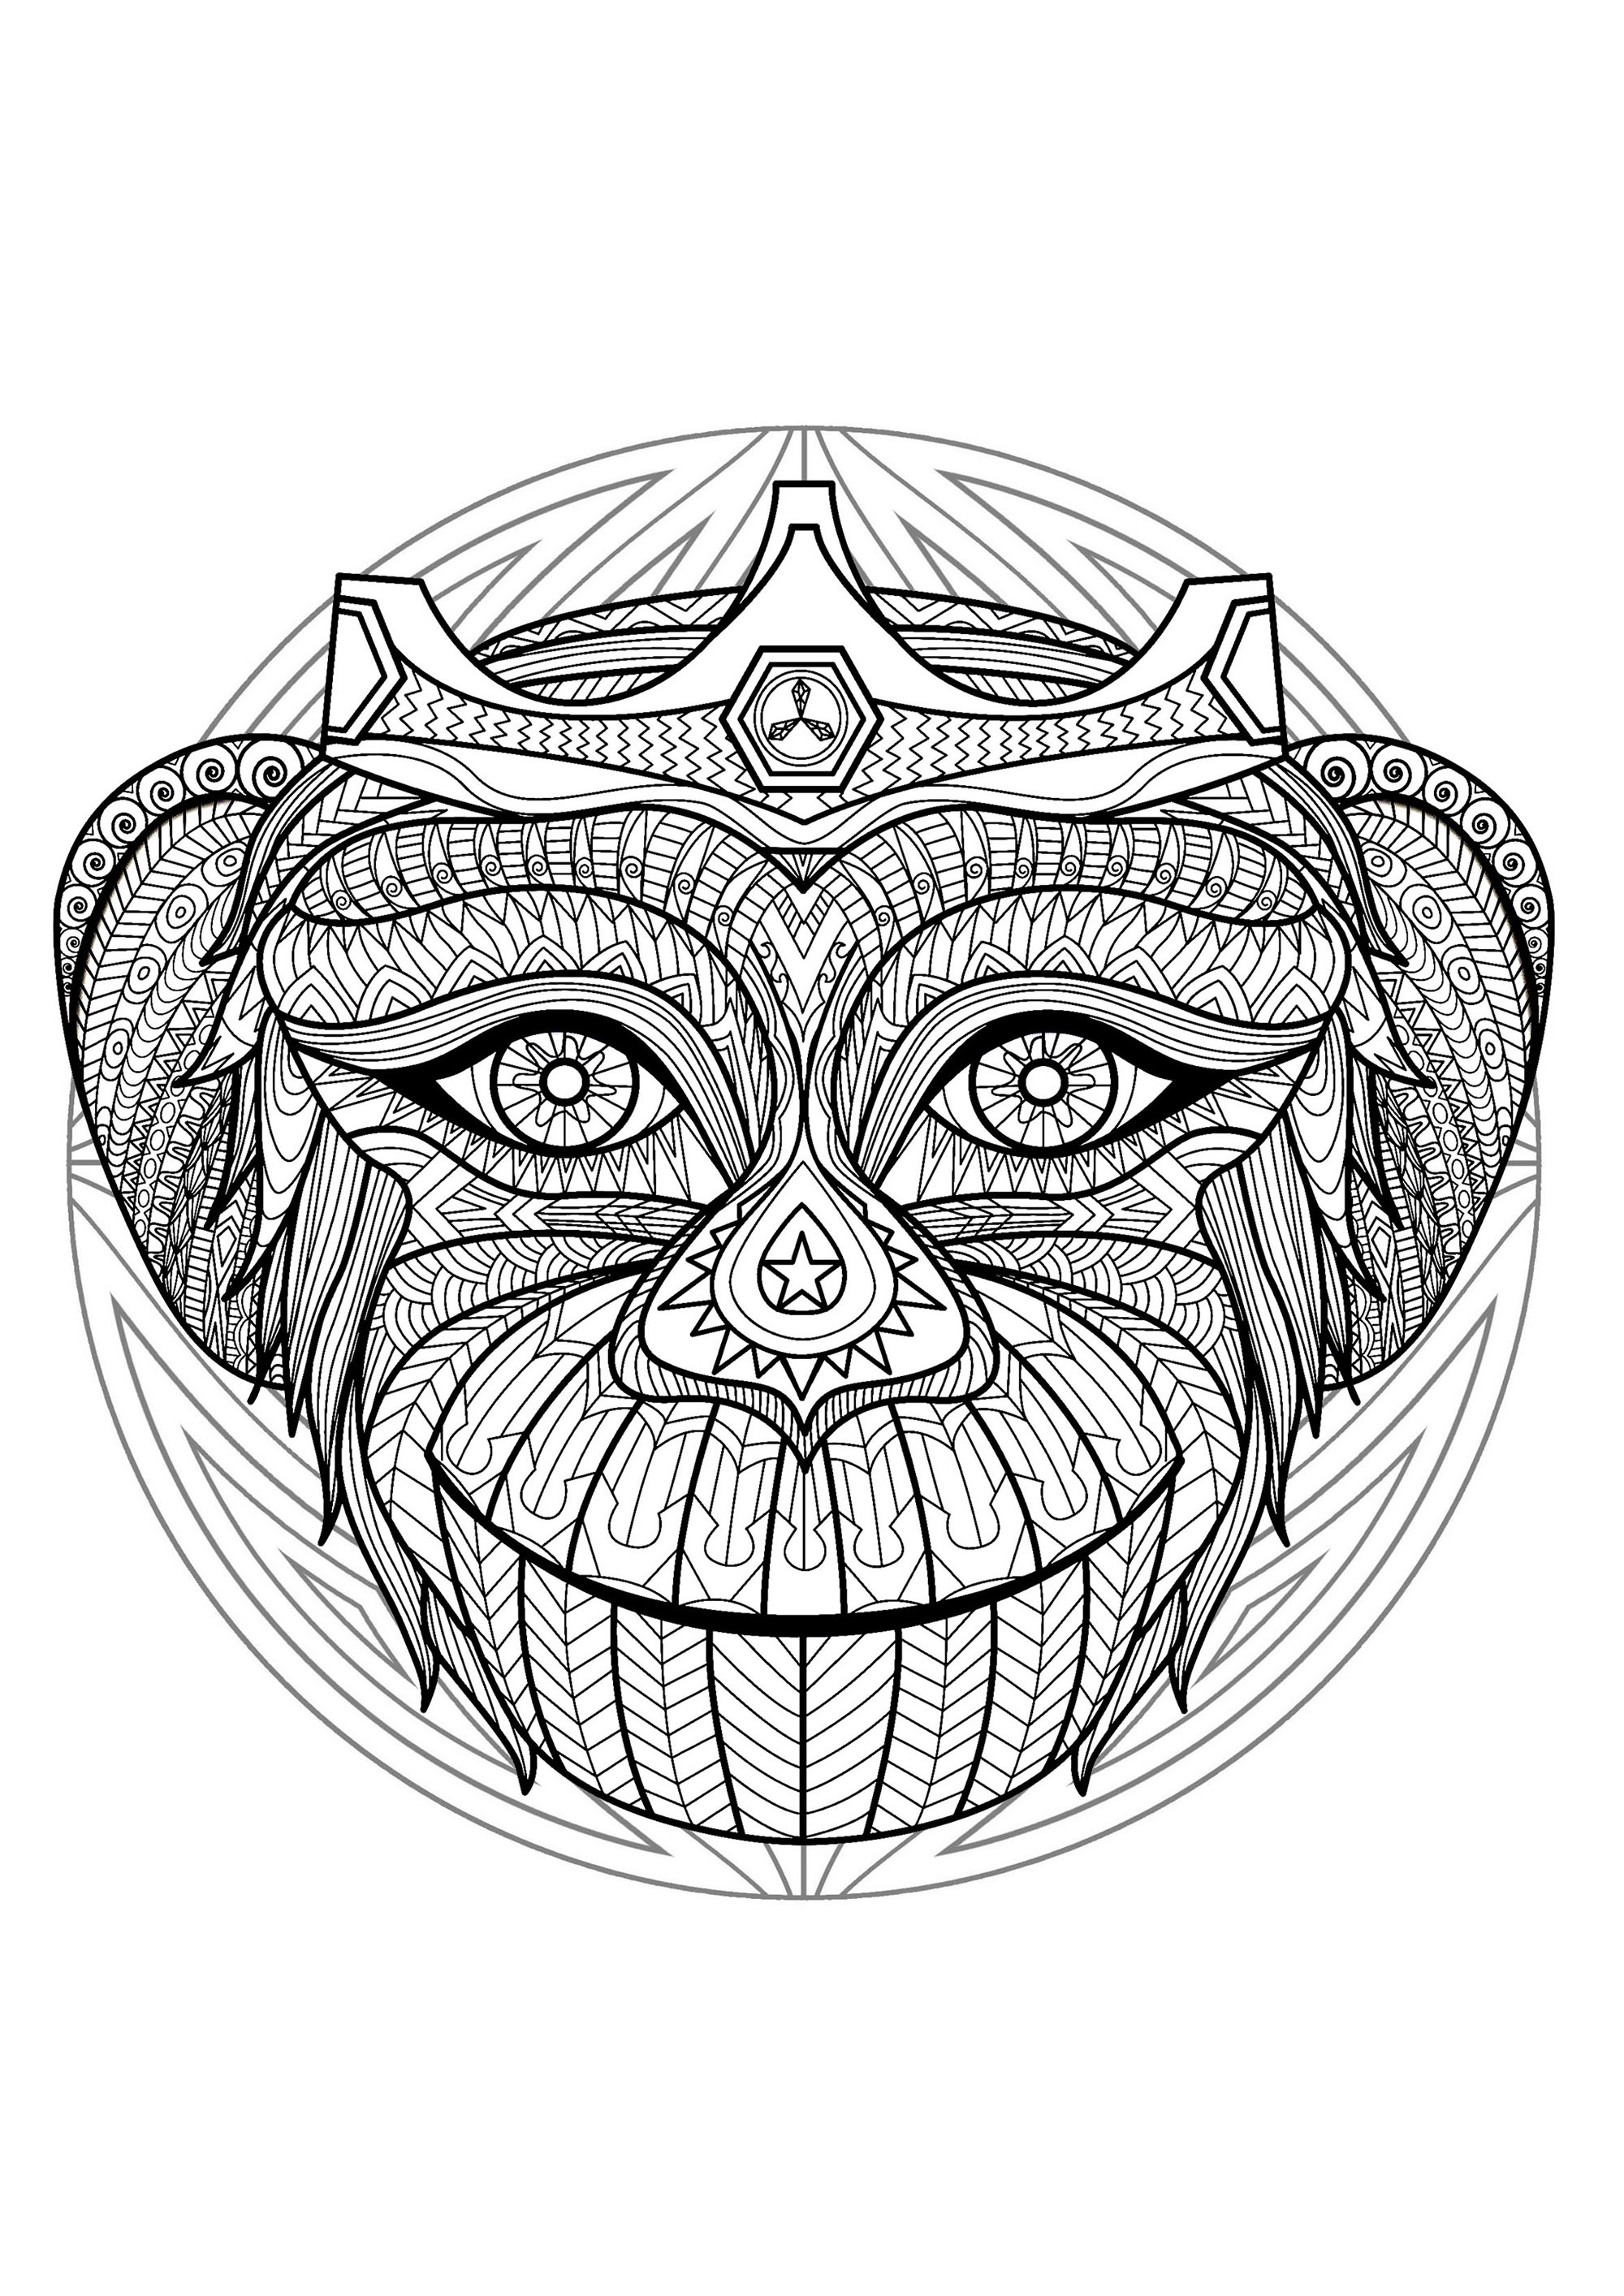 Mandala para colorear con una cabeza de mono muy especial y dibujos sencillos de fondo